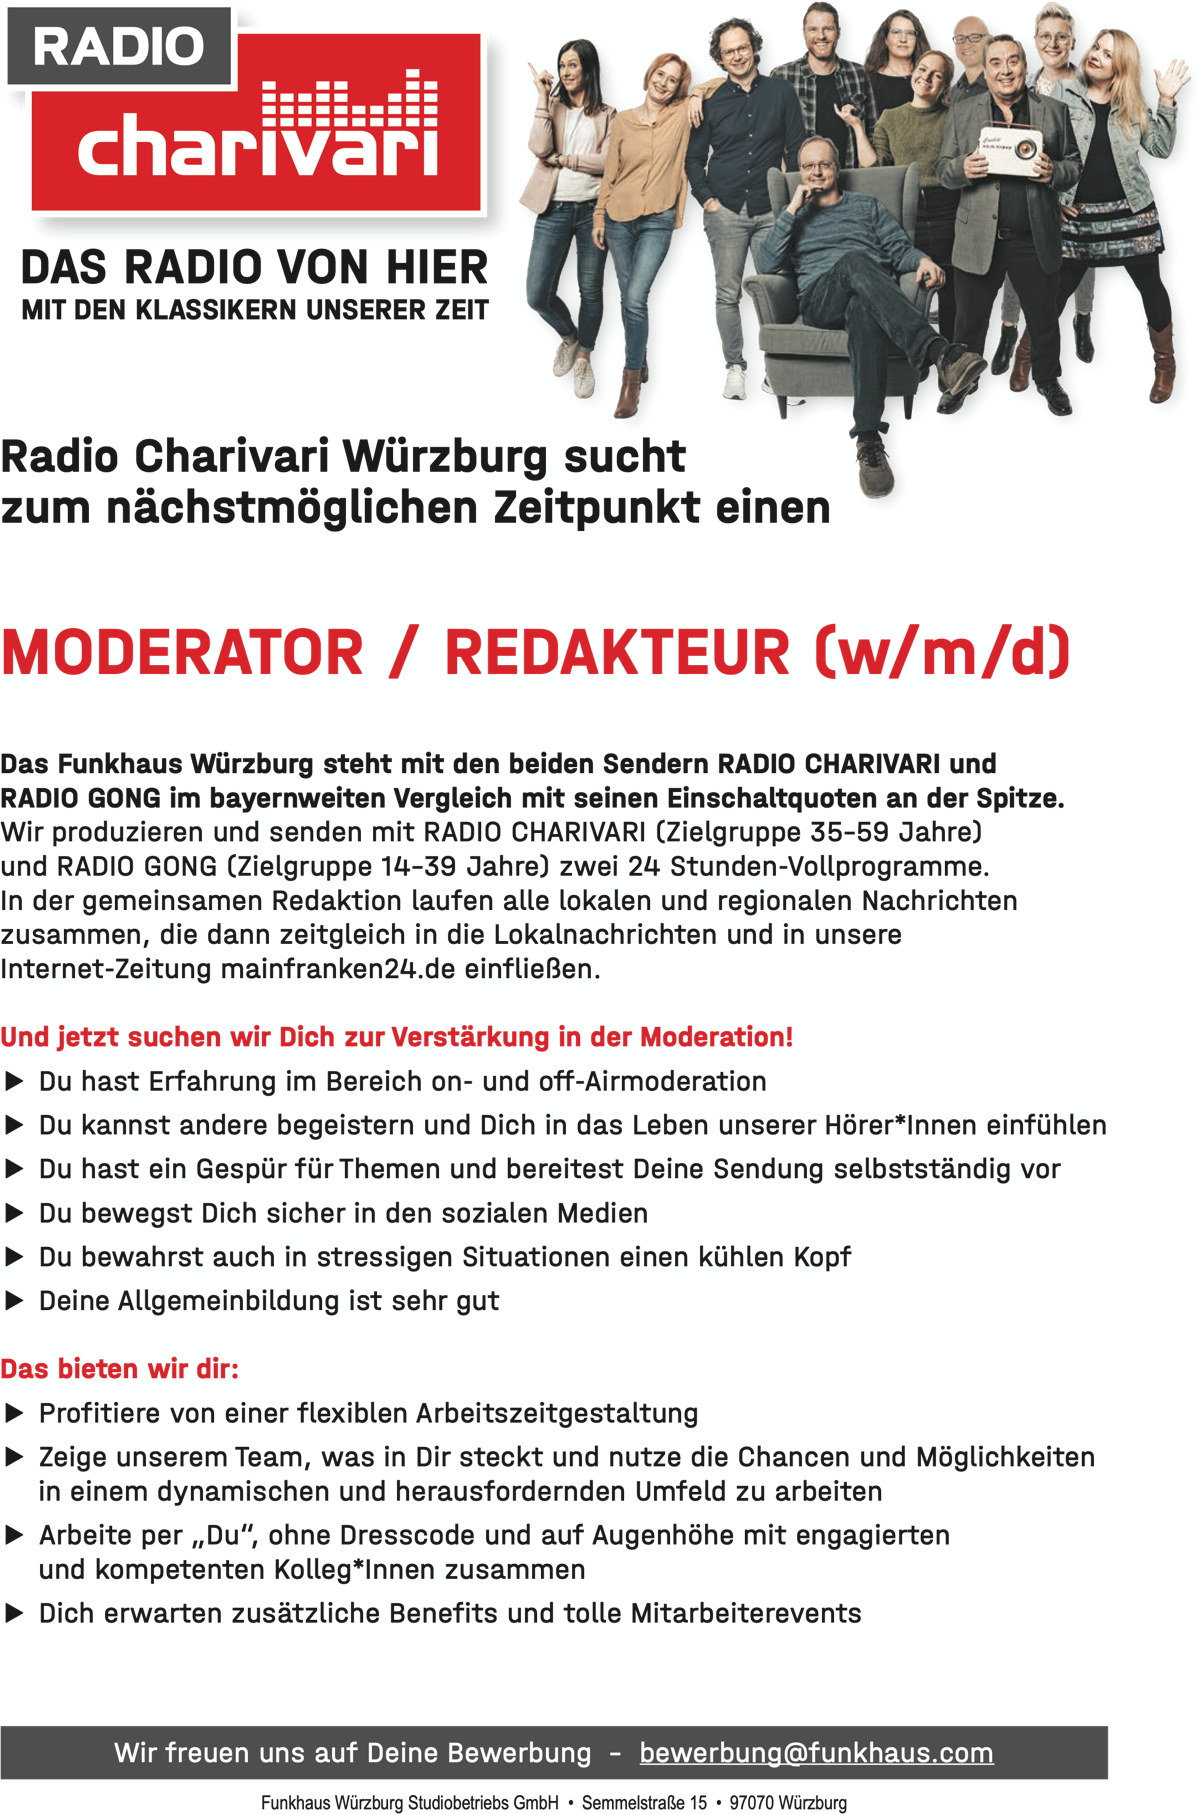 DAS RADIO VON HIER MIT DEN KLASSIKERN UNSERER ZEIT Radio Charivari Würzburg sucht zum nächstmöglichen Zeitpunkt einen MODERATOR / REDAKTEUR (w/m/d) Das Funkhaus Würzburg steht mit den beiden Sendern RADIO CHARIVARI und RADIO GONG im bayernweiten Vergleich mit seinen Einschaltquoten an der Spitze. Wir produzieren und senden mit RADIO CHARIVARI (Zielgruppe 35–59 Jahre) und RADIO GONG (Zielgruppe 14–39 Jahre) zwei 24 Stunden-Vollprogramme. In der gemeinsamen Redaktion laufen alle lokalen und regionalen Nachrichten zusammen, die dann zeitgleich in die Lokalnachrichten und in unsere Internet-Zeitung mainfranken24.de einfließen. Und jetzt suchen wir Dich zur Verstärkung in der Moderation! ▶ Du hast Erfahrung im Bereich on- und off-Airmoderation ▶ Du kannst andere begeistern und Dich in das Leben unserer Hörer*Innen einfühlen ▶ Du hast ein Gespür für Themen und bereitest Deine Sendung selbstständig vor ▶ Du bewegst Dich sicher in den sozialen Medien ▶ Du bewahrst auch in stressigen Situationen einen kühlen Kopf ▶ Deine Allgemeinbildung ist sehr gut Das bieten wir dir: ▶ Profitiere von einer flexiblen Arbeitszeitgestaltung ▶ Zeige unserem Team, was in Dir steckt und nutze die Chancen und Möglichkeiten in einem dynamischen und herausfordernden Umfeld zu arbeiten ▶ Arbeite per „Du“, ohne Dresscode und auf Augenhöhe mit engagierten und kompetenten Kolleg*Innen zusammen ▶ Dich erwarten zusätzliche Benefits und tolle Mitarbeiterevents Wir freuen uns auf Deine Bewerbung – bewerbung@funkhaus.com   Funkhaus Würzburg Studiobetriebs GmbH • Semmelstraße 15 • 97070 Würzburg